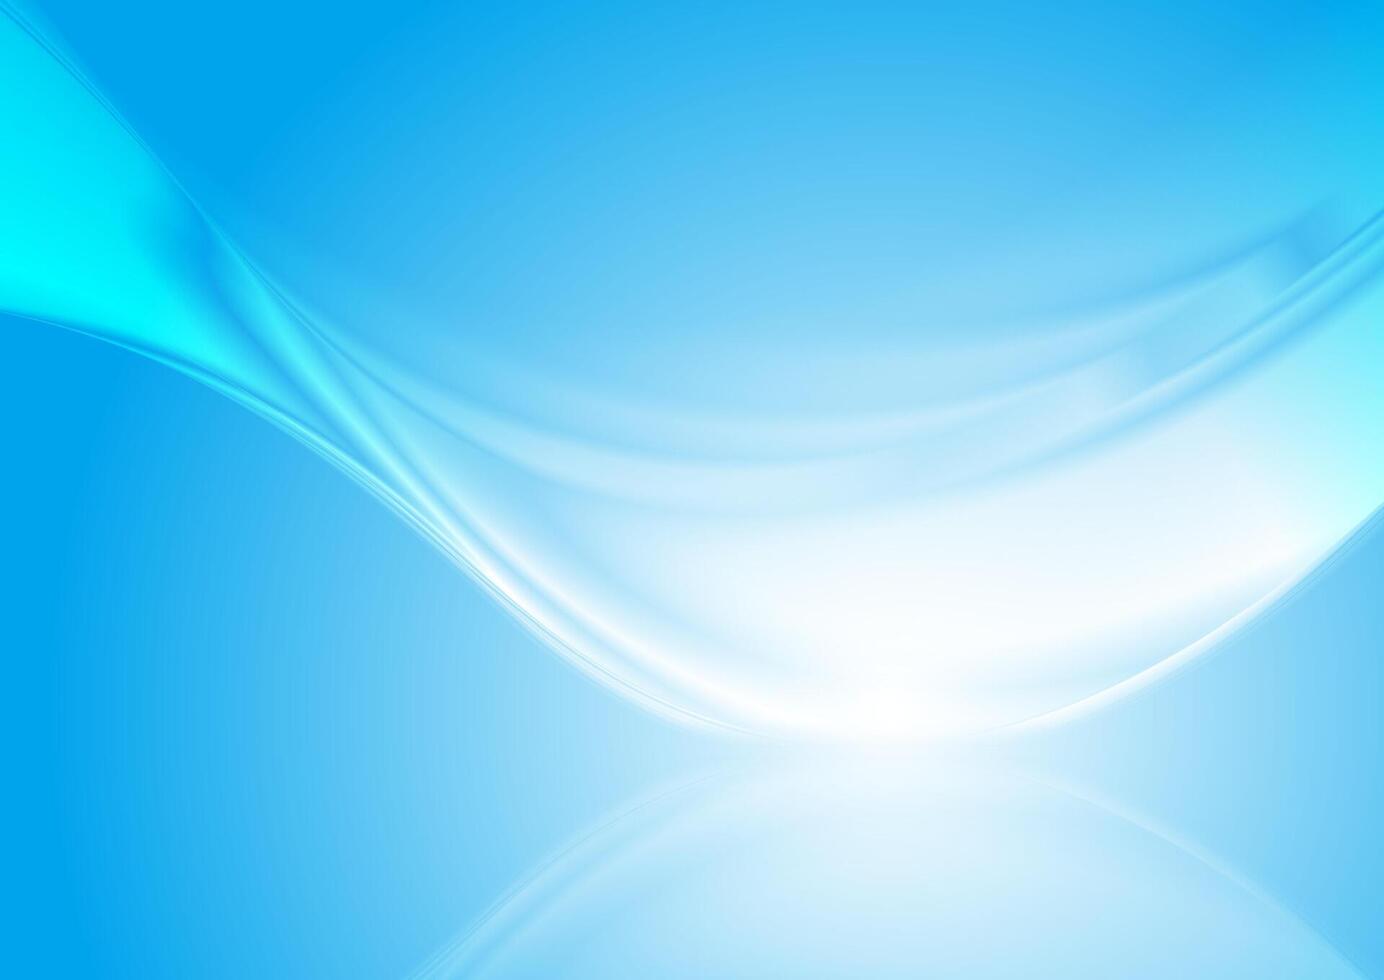 Licht Blau glatt glänzend Welle abstrakt Hintergrund vektor